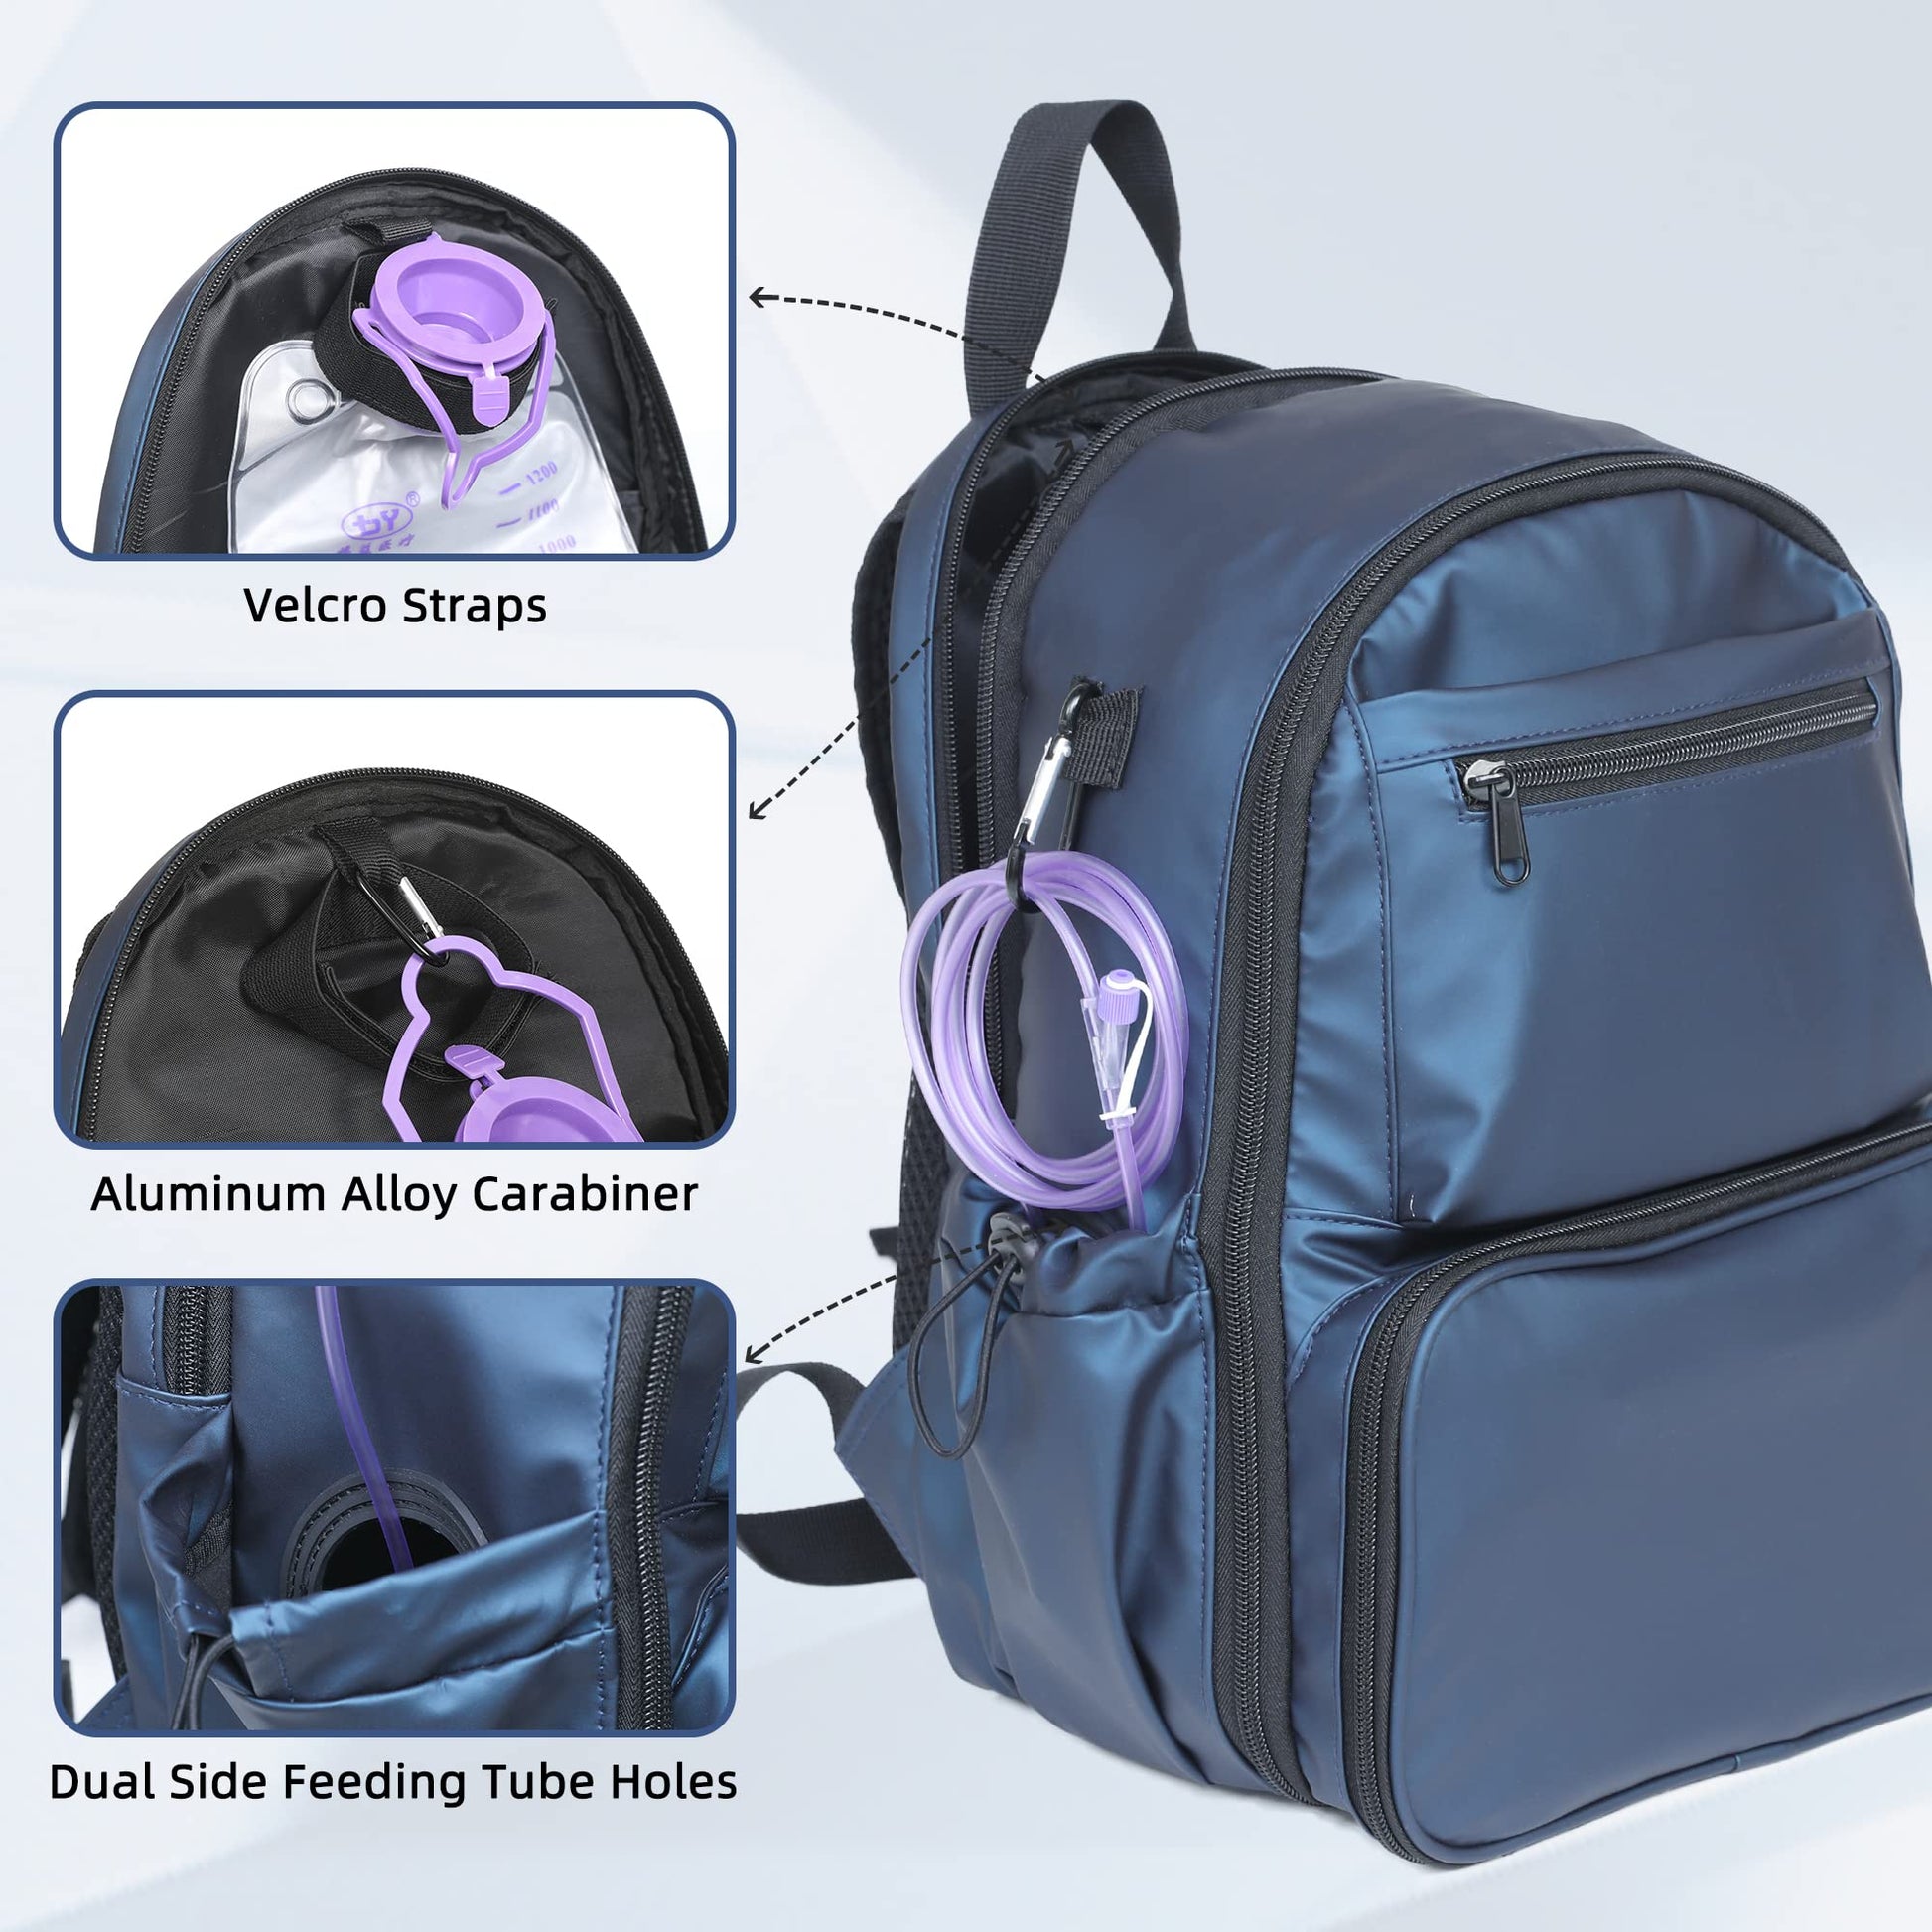 Buy Lalu Cottage Gtube Feeding Tube Backpack for Kangaroo Joey